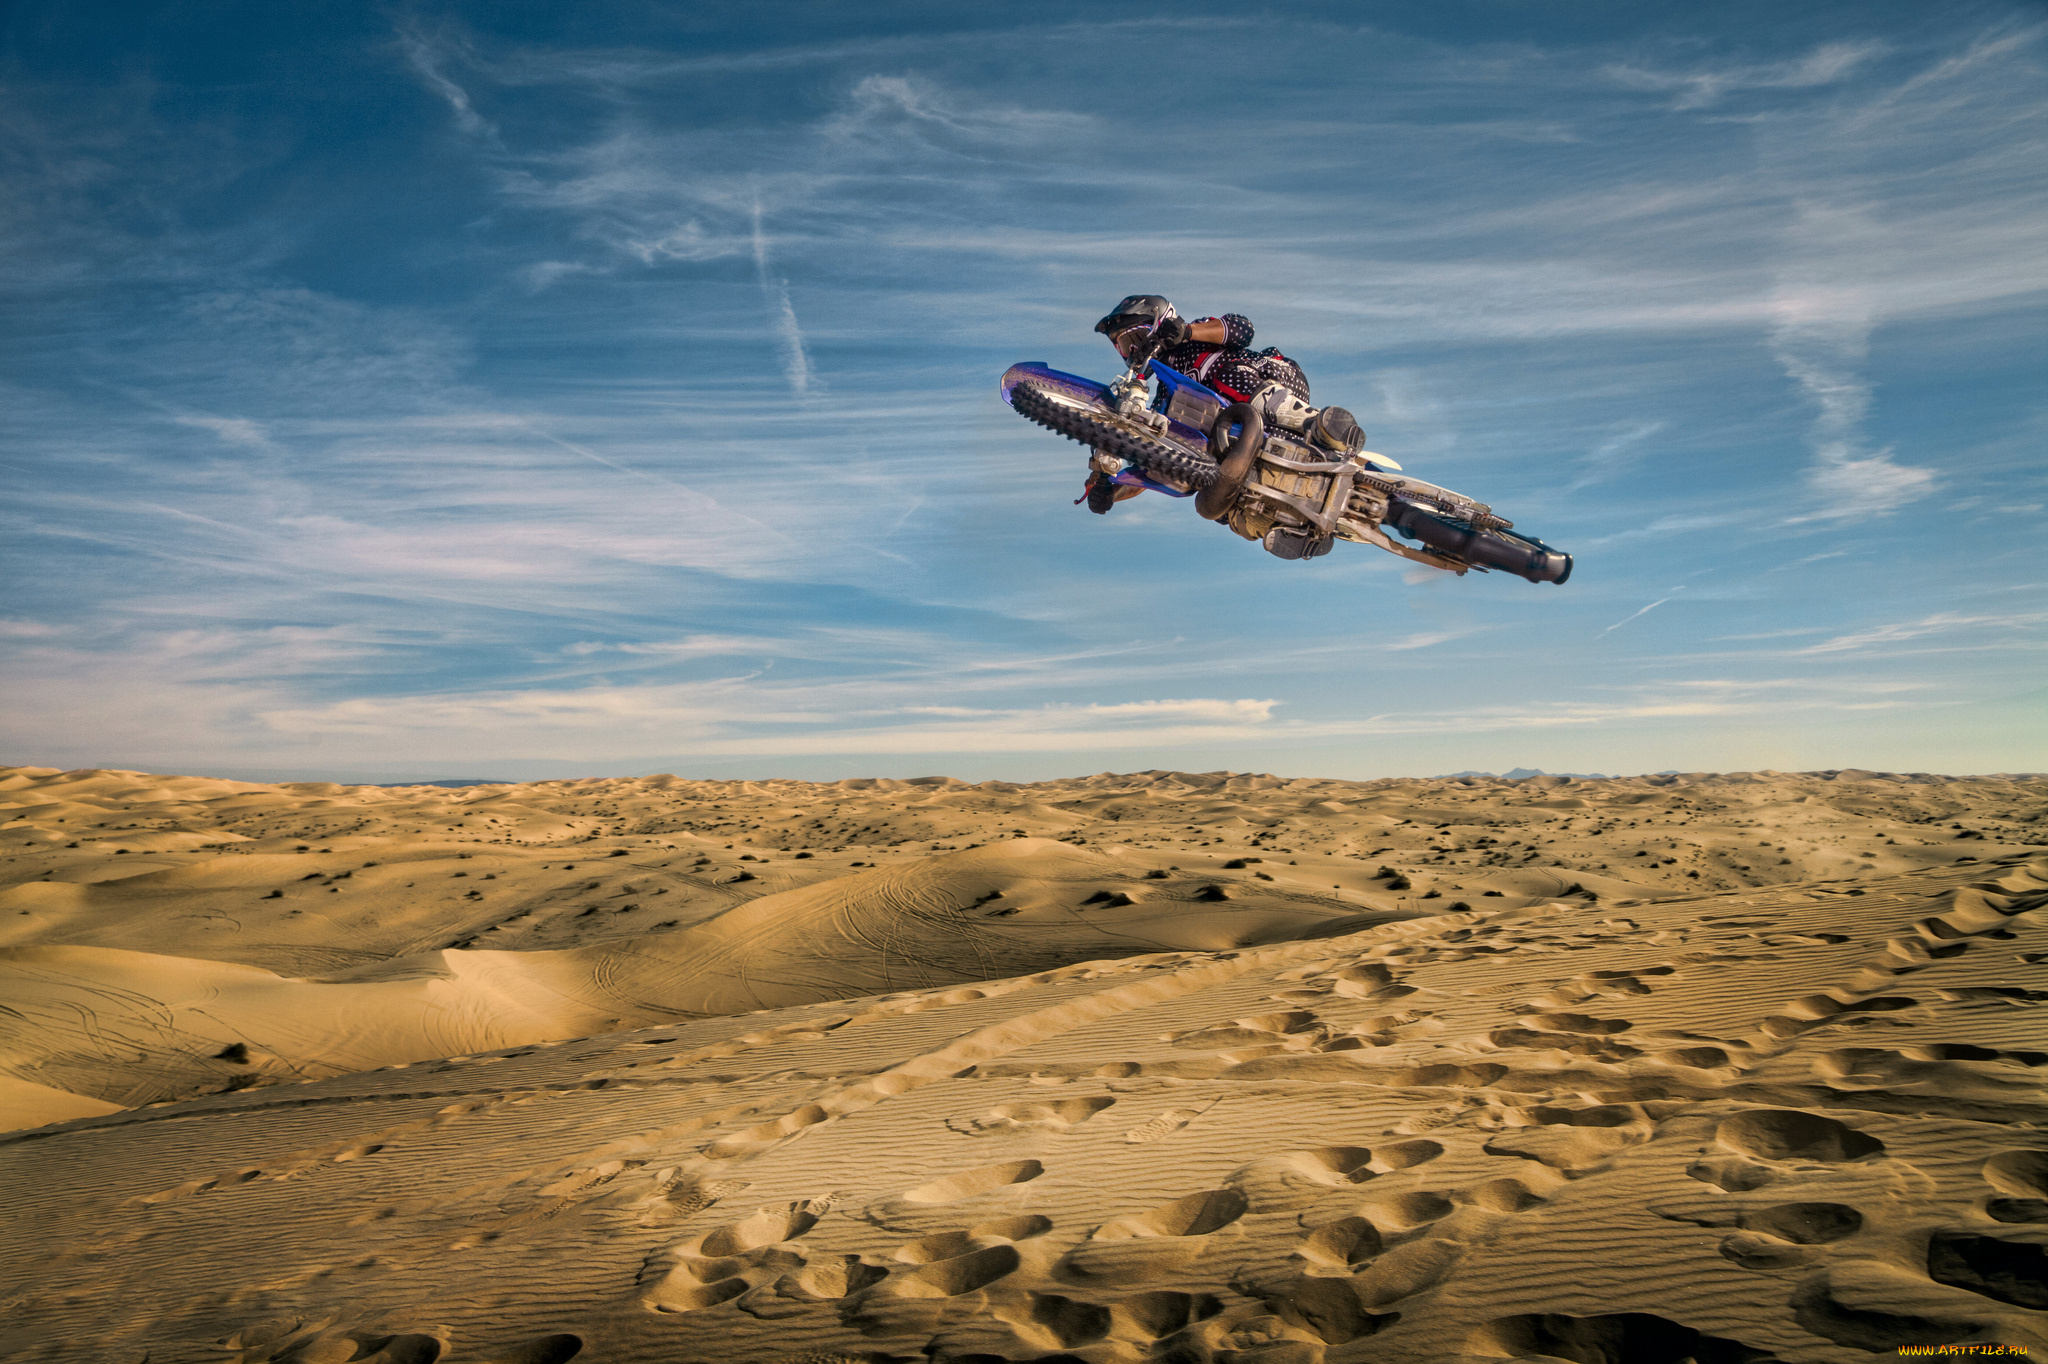 спорт, мотокросс, байк, гонщик, прыжок, песок, пустыня